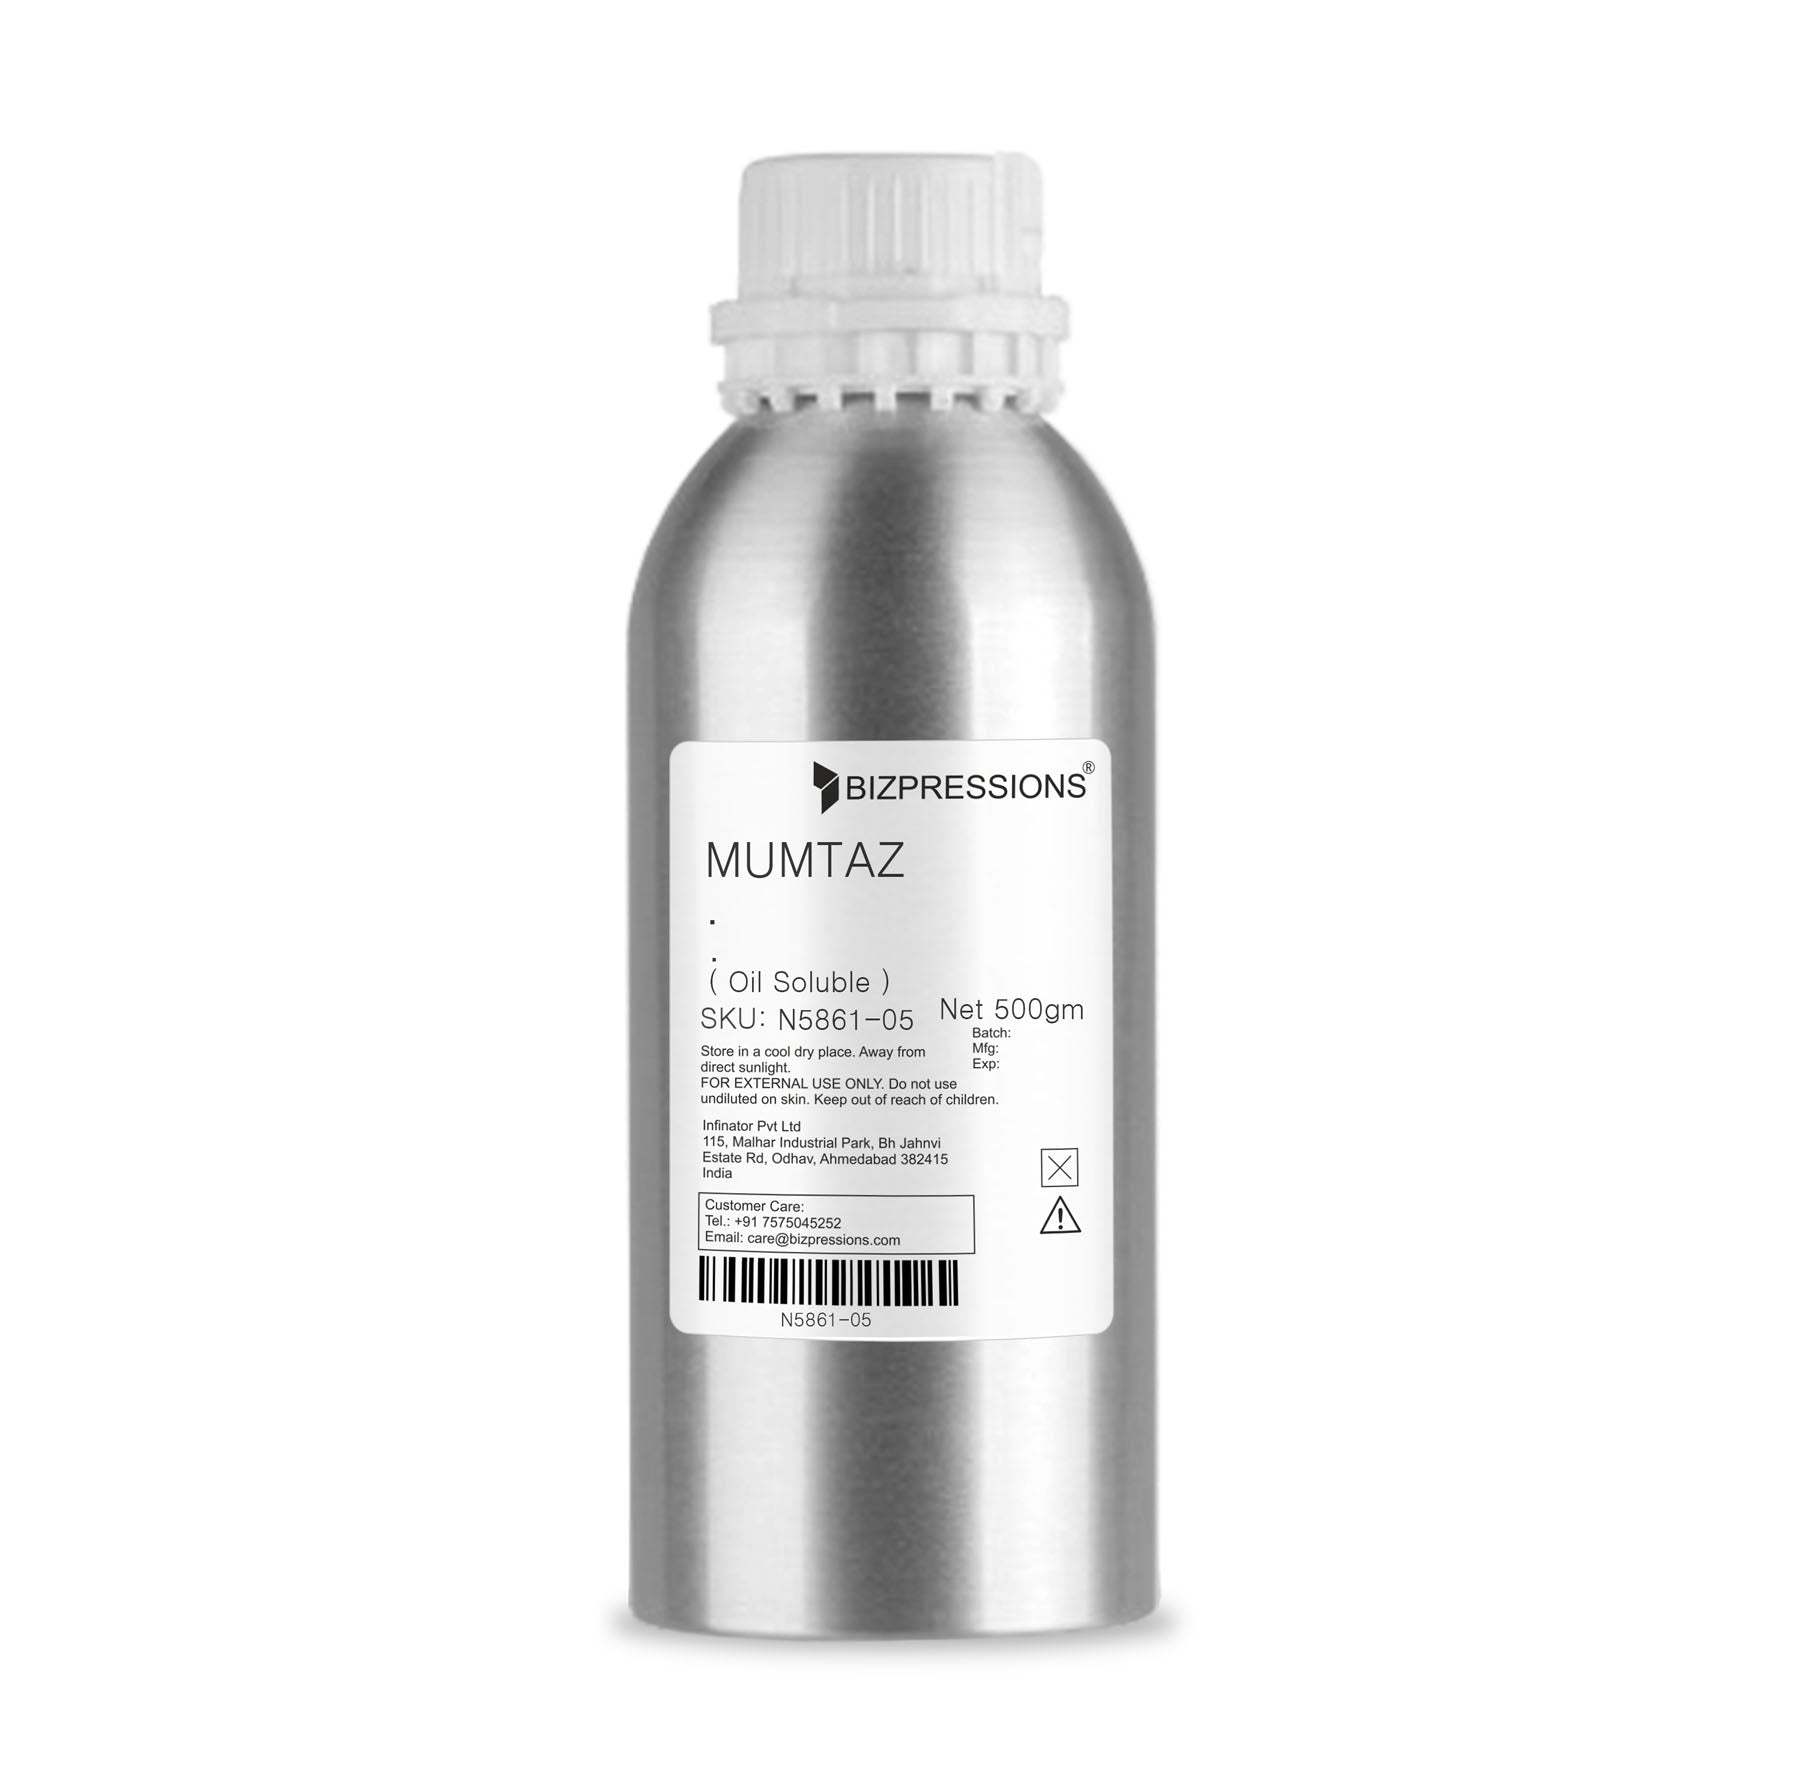 MUMTAZ - Fragrance ( Oil Soluble ) - 500 gm